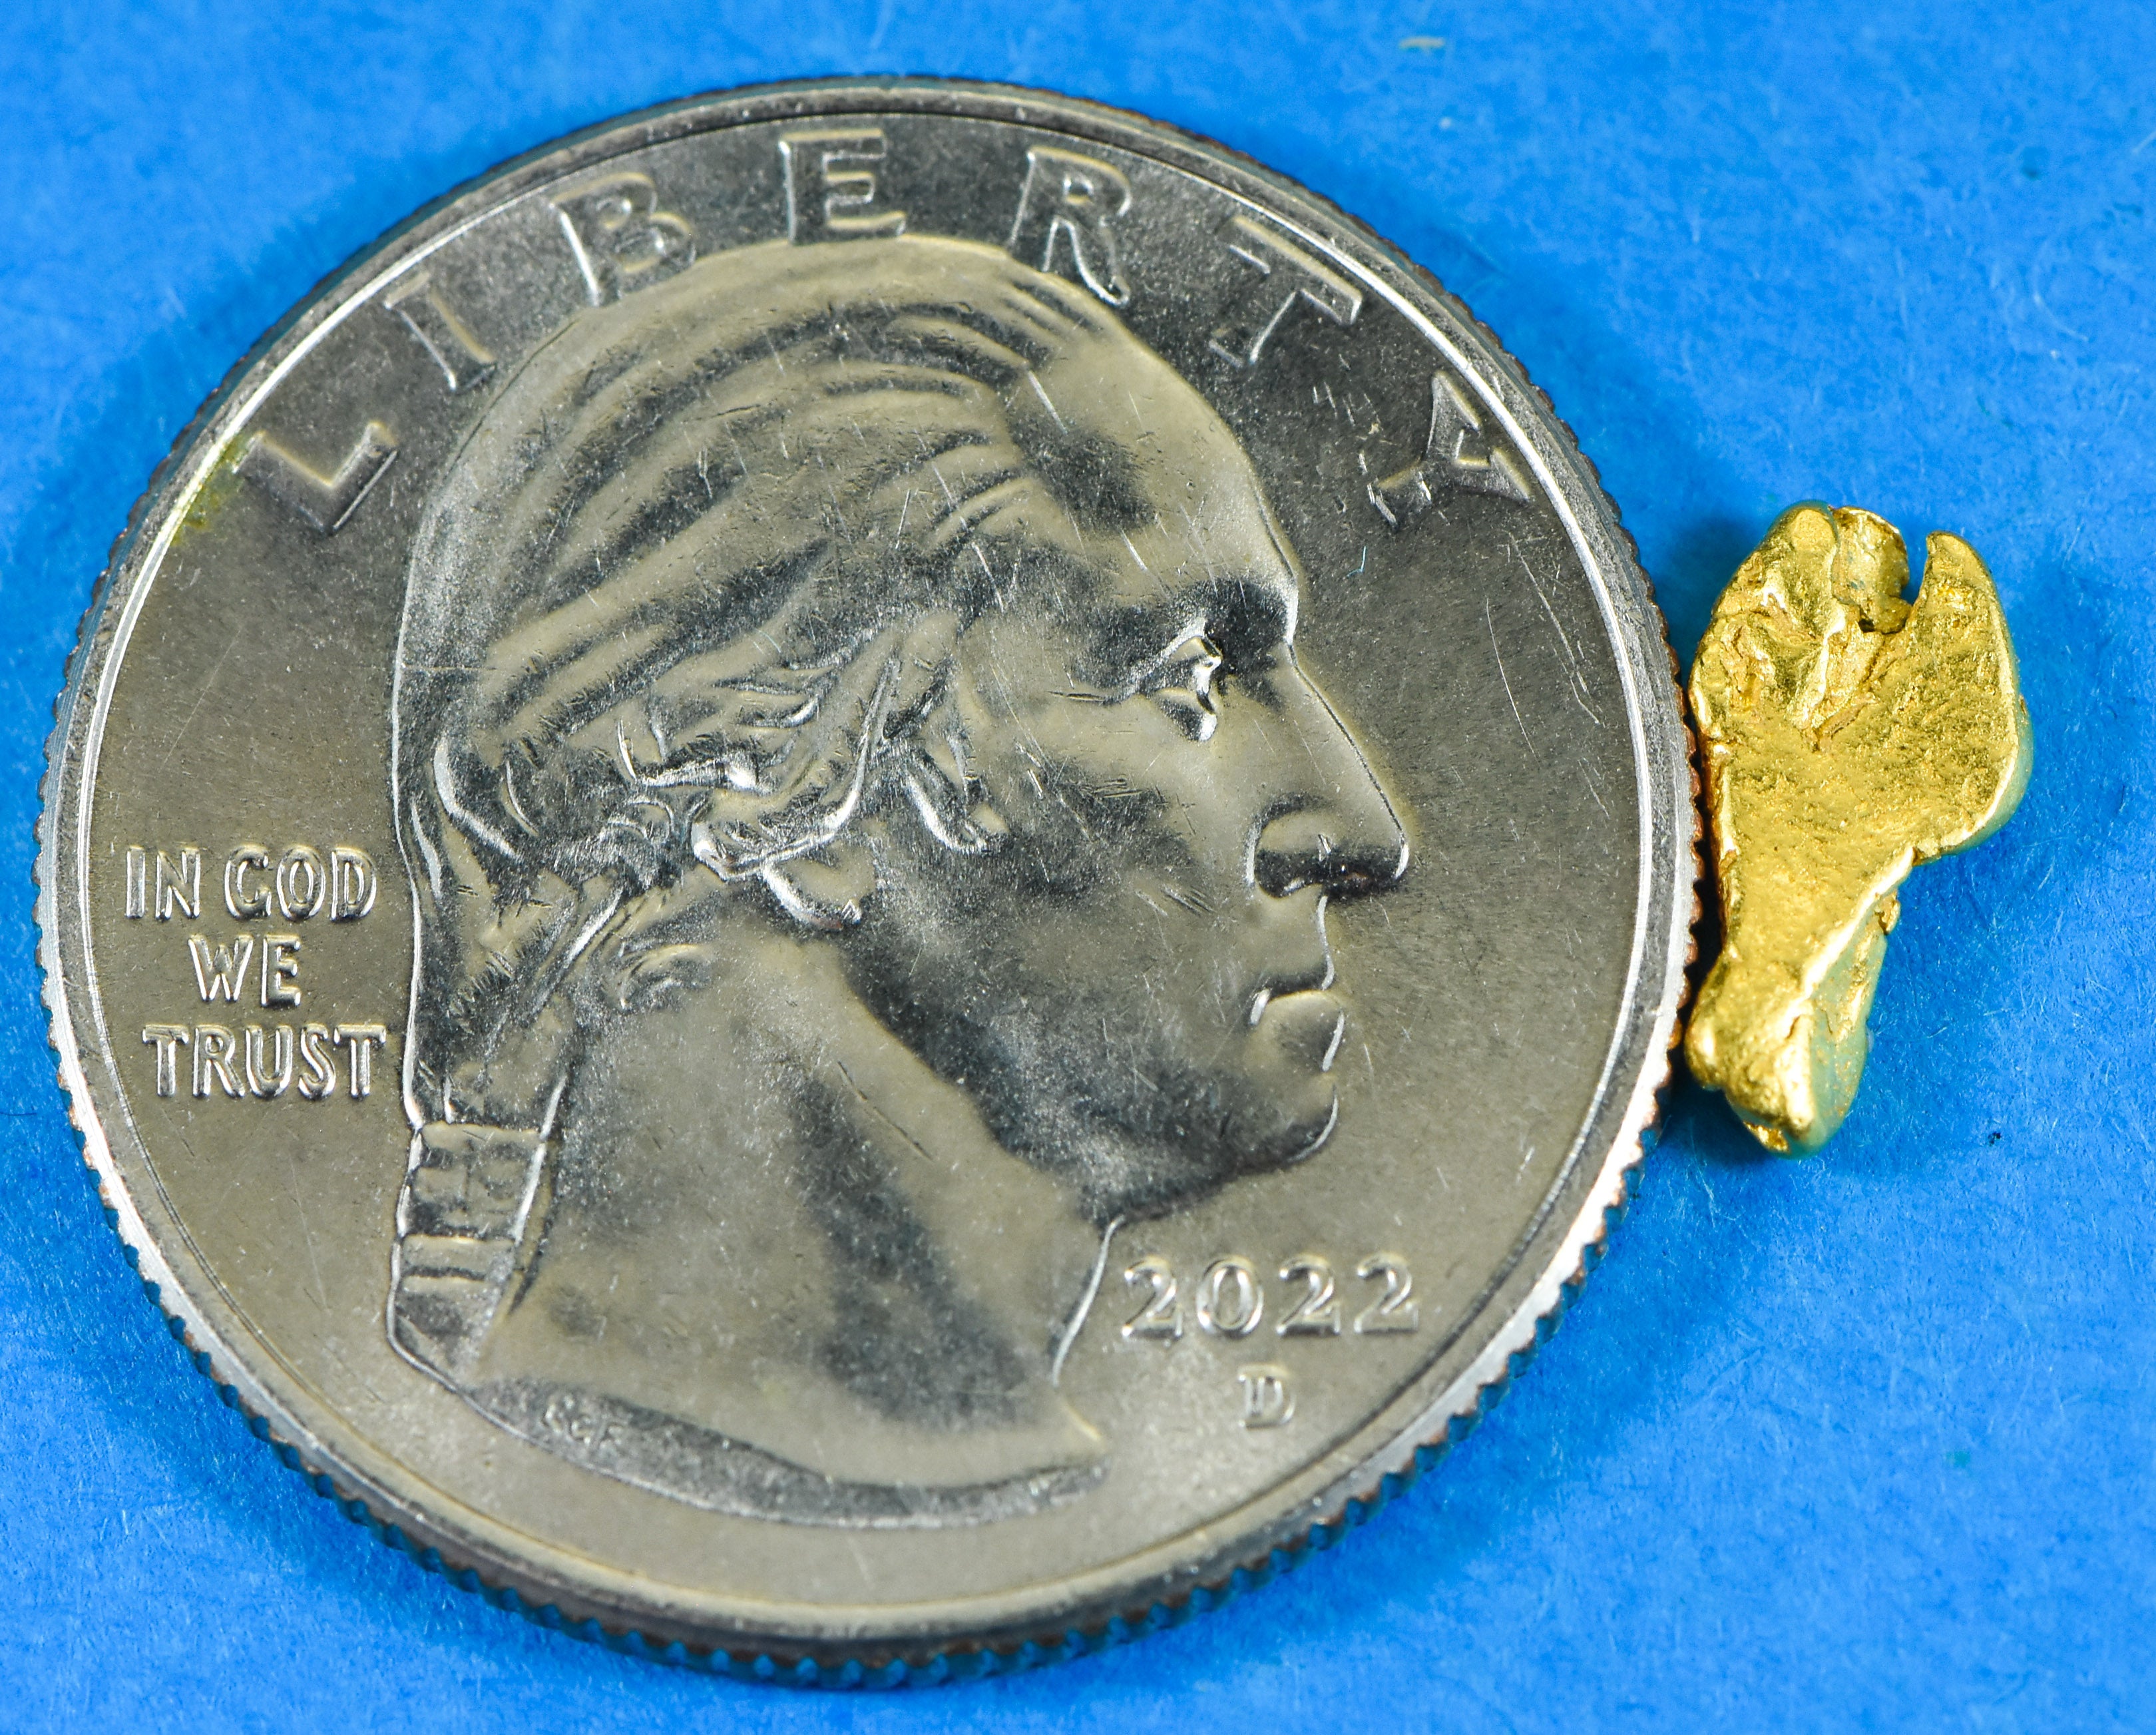 #18 Alaskan BC Natural Gold Nugget .49 Grams Genuine